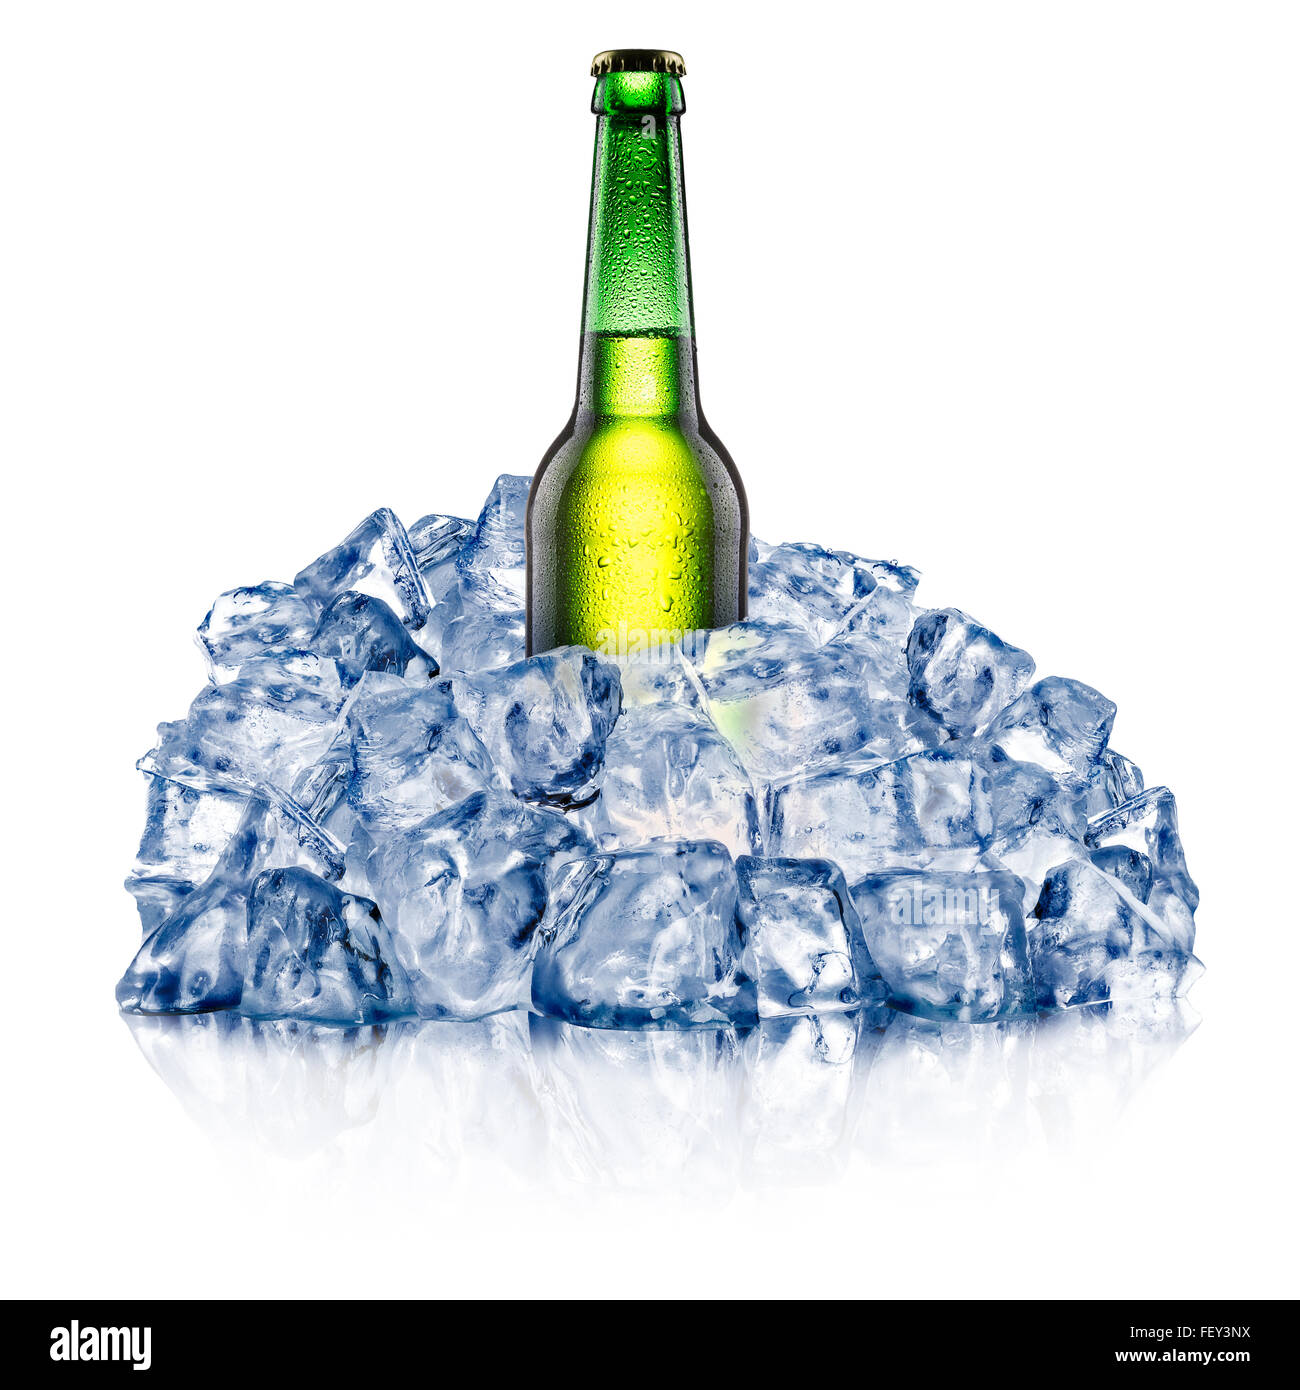 Bouteille de bière verte, circuit de refroidissement vers le bas dans une glace pilée. Chemins de détourage Banque D'Images